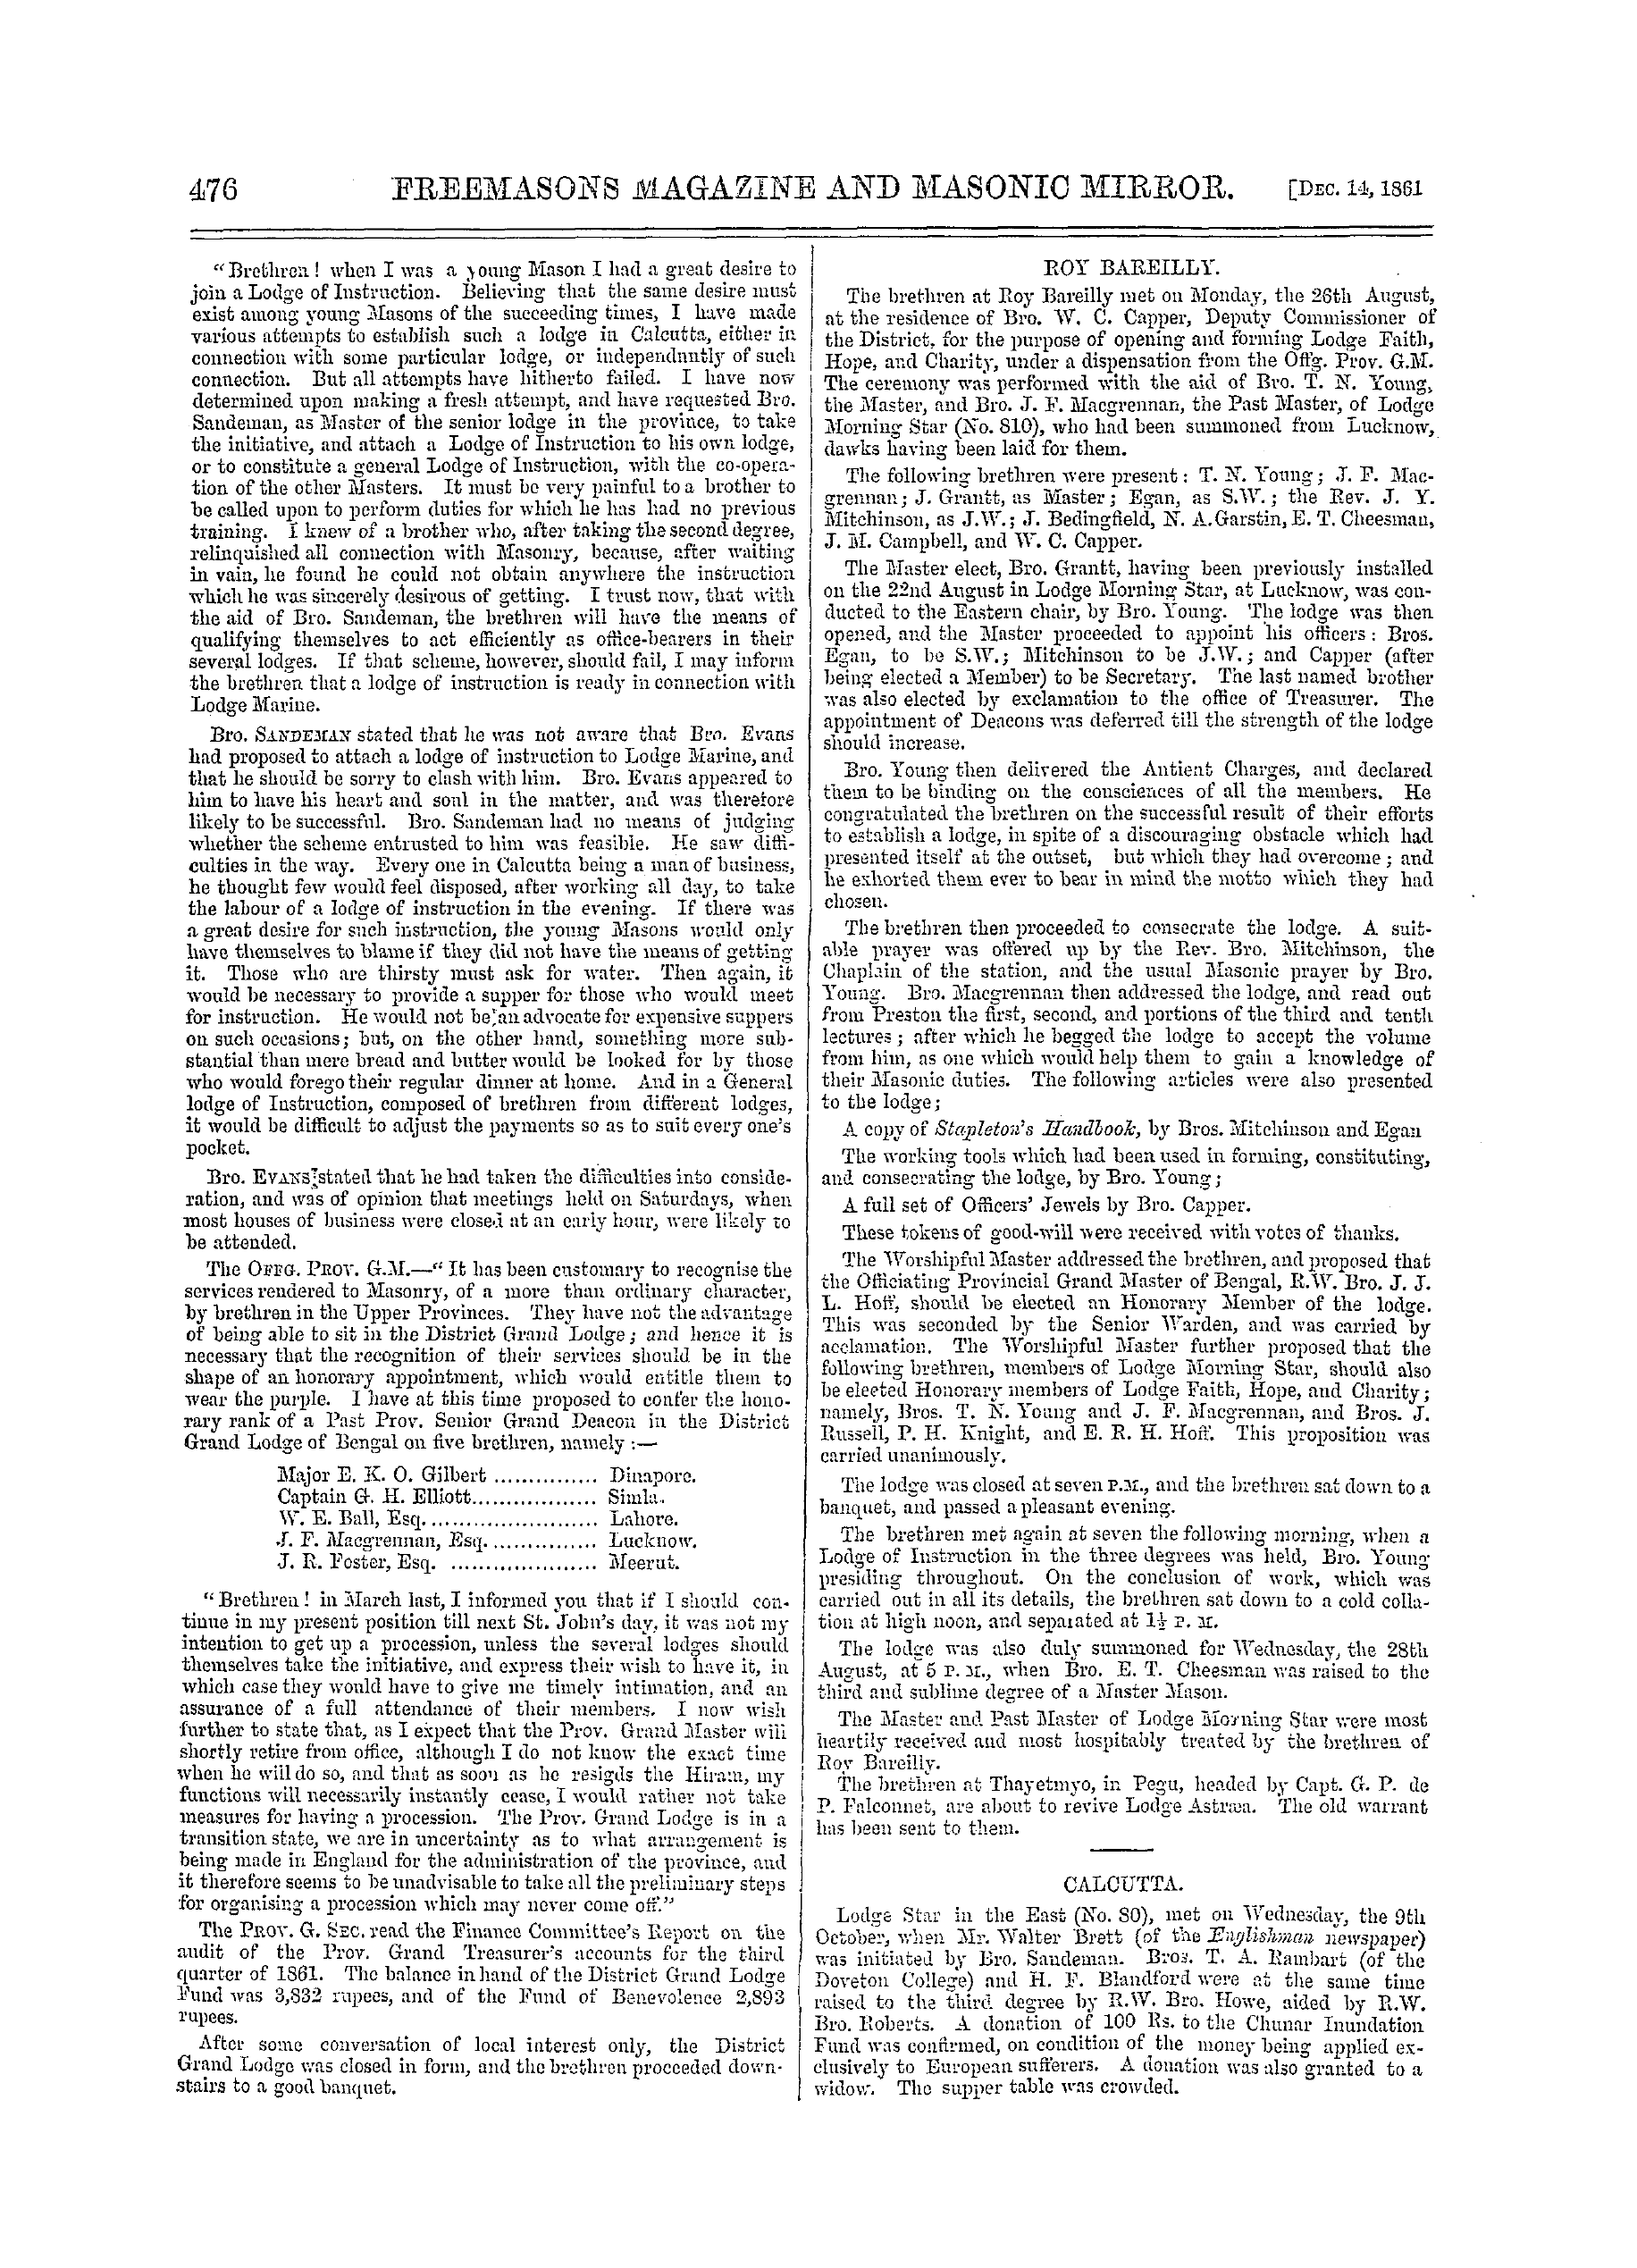 The Freemasons' Monthly Magazine: 1861-12-14 - India.